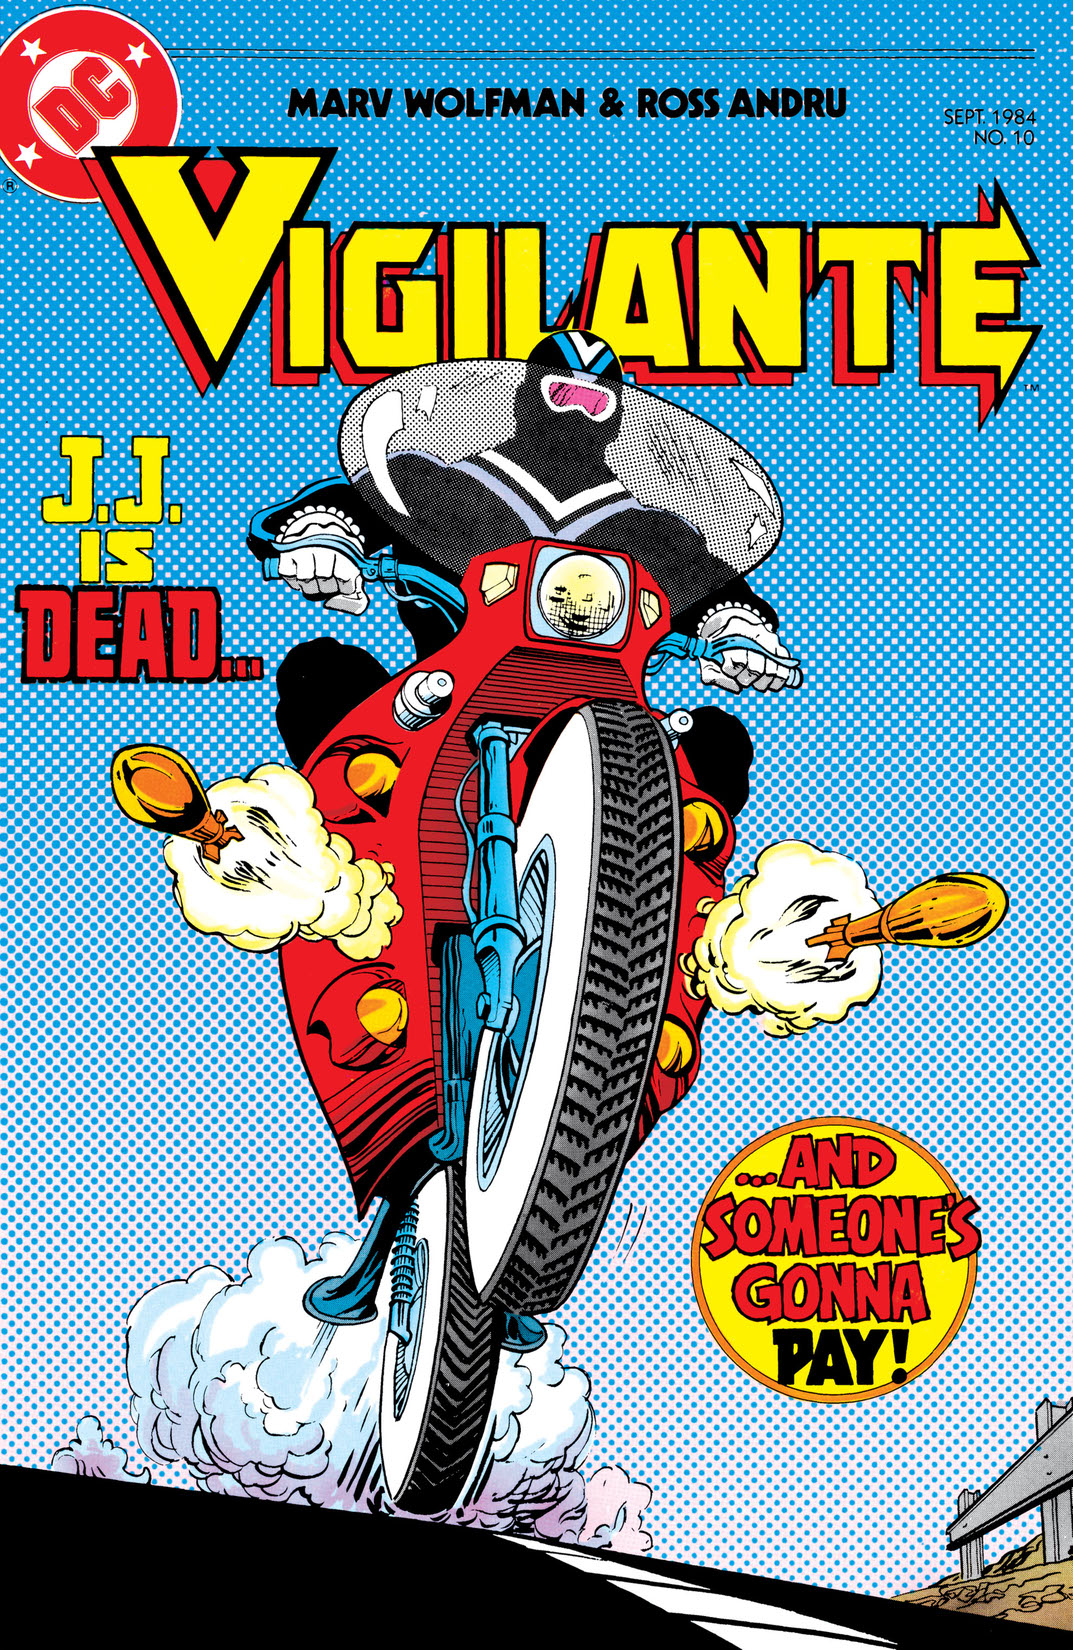 The Vigilante #10 preview images